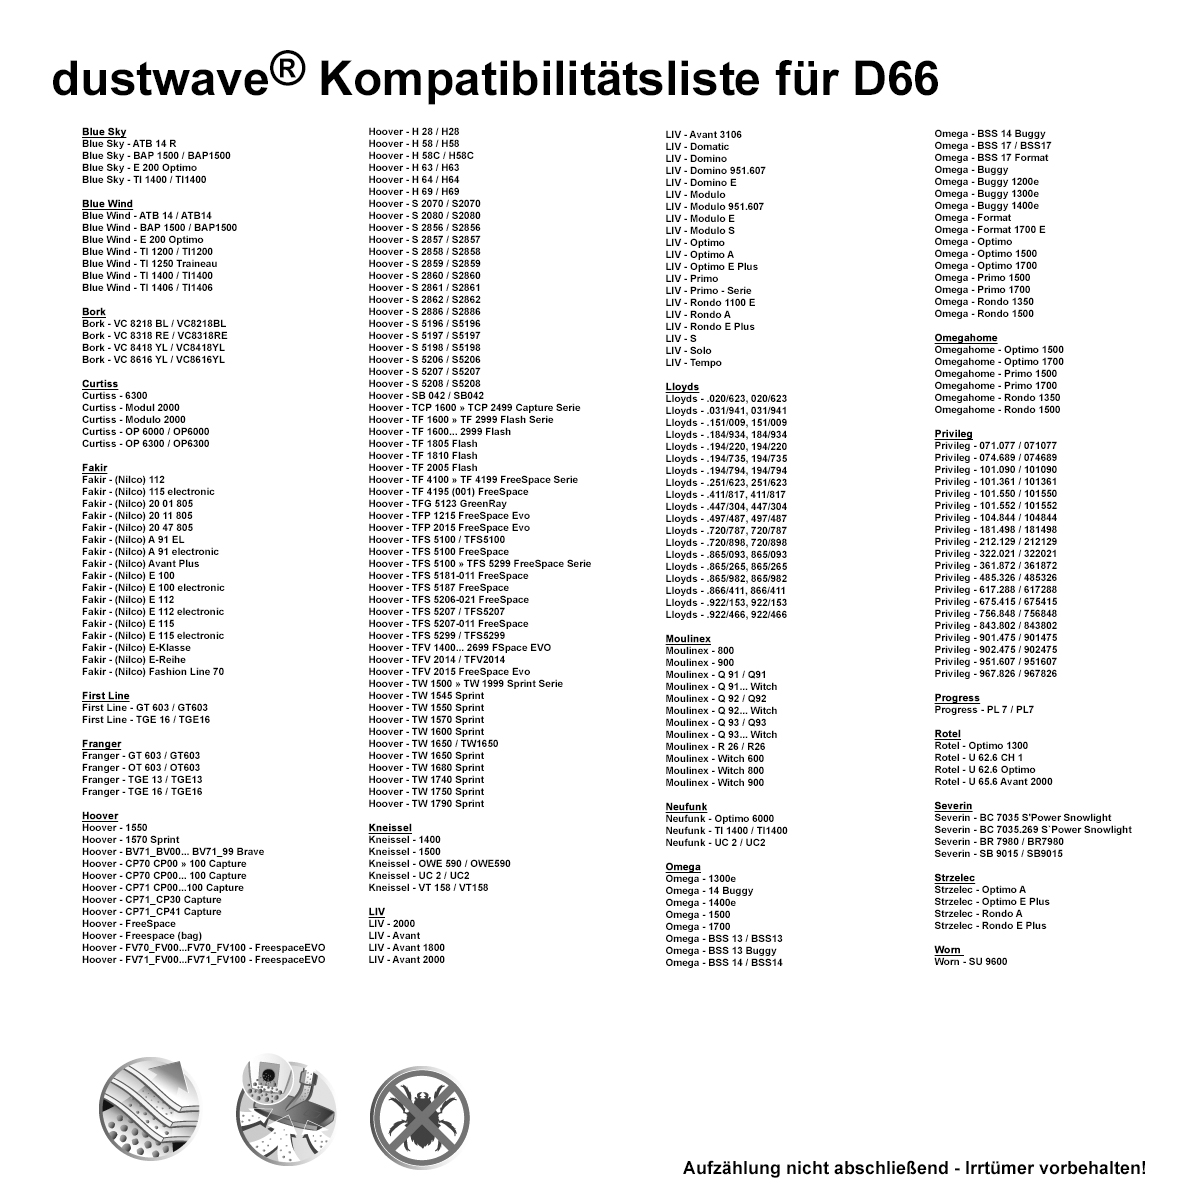 Dustwave® 20 Staubsaugerbeutel für Hoover TW1750 / TRTW1750 - hocheffizient, mehrlagiges Mikrovlies mit Hygieneverschluss - Made in Germany